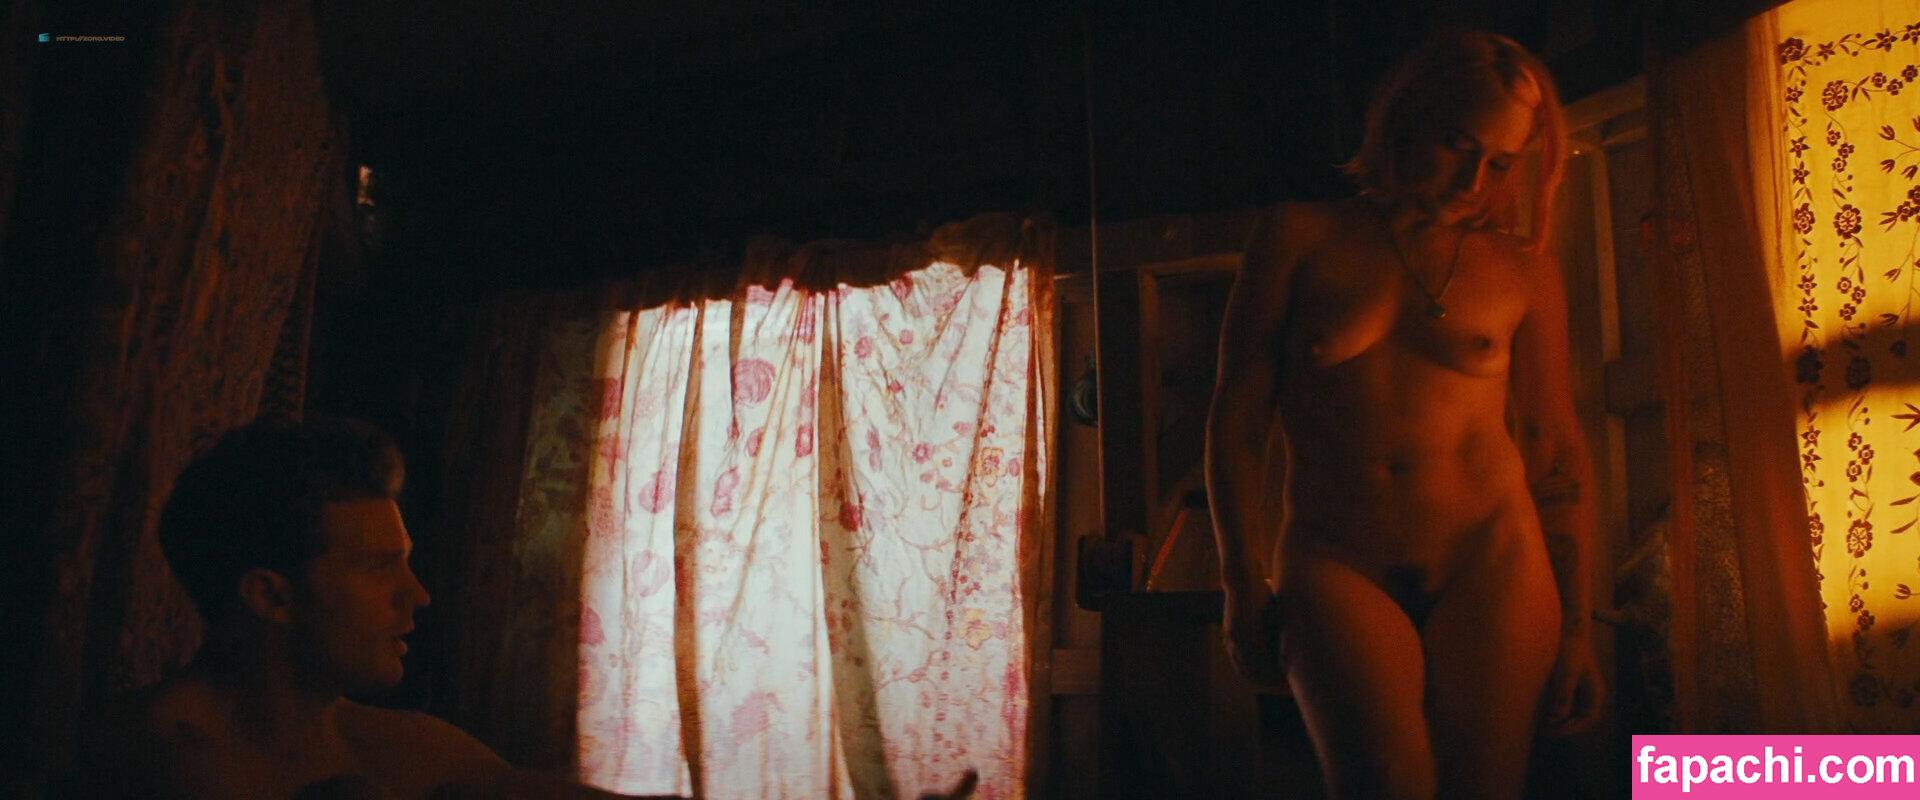 Jemima Kirke / jemima_jo_kirke / jemimakirke leaked nude photo #0018 from OnlyFans/Patreon